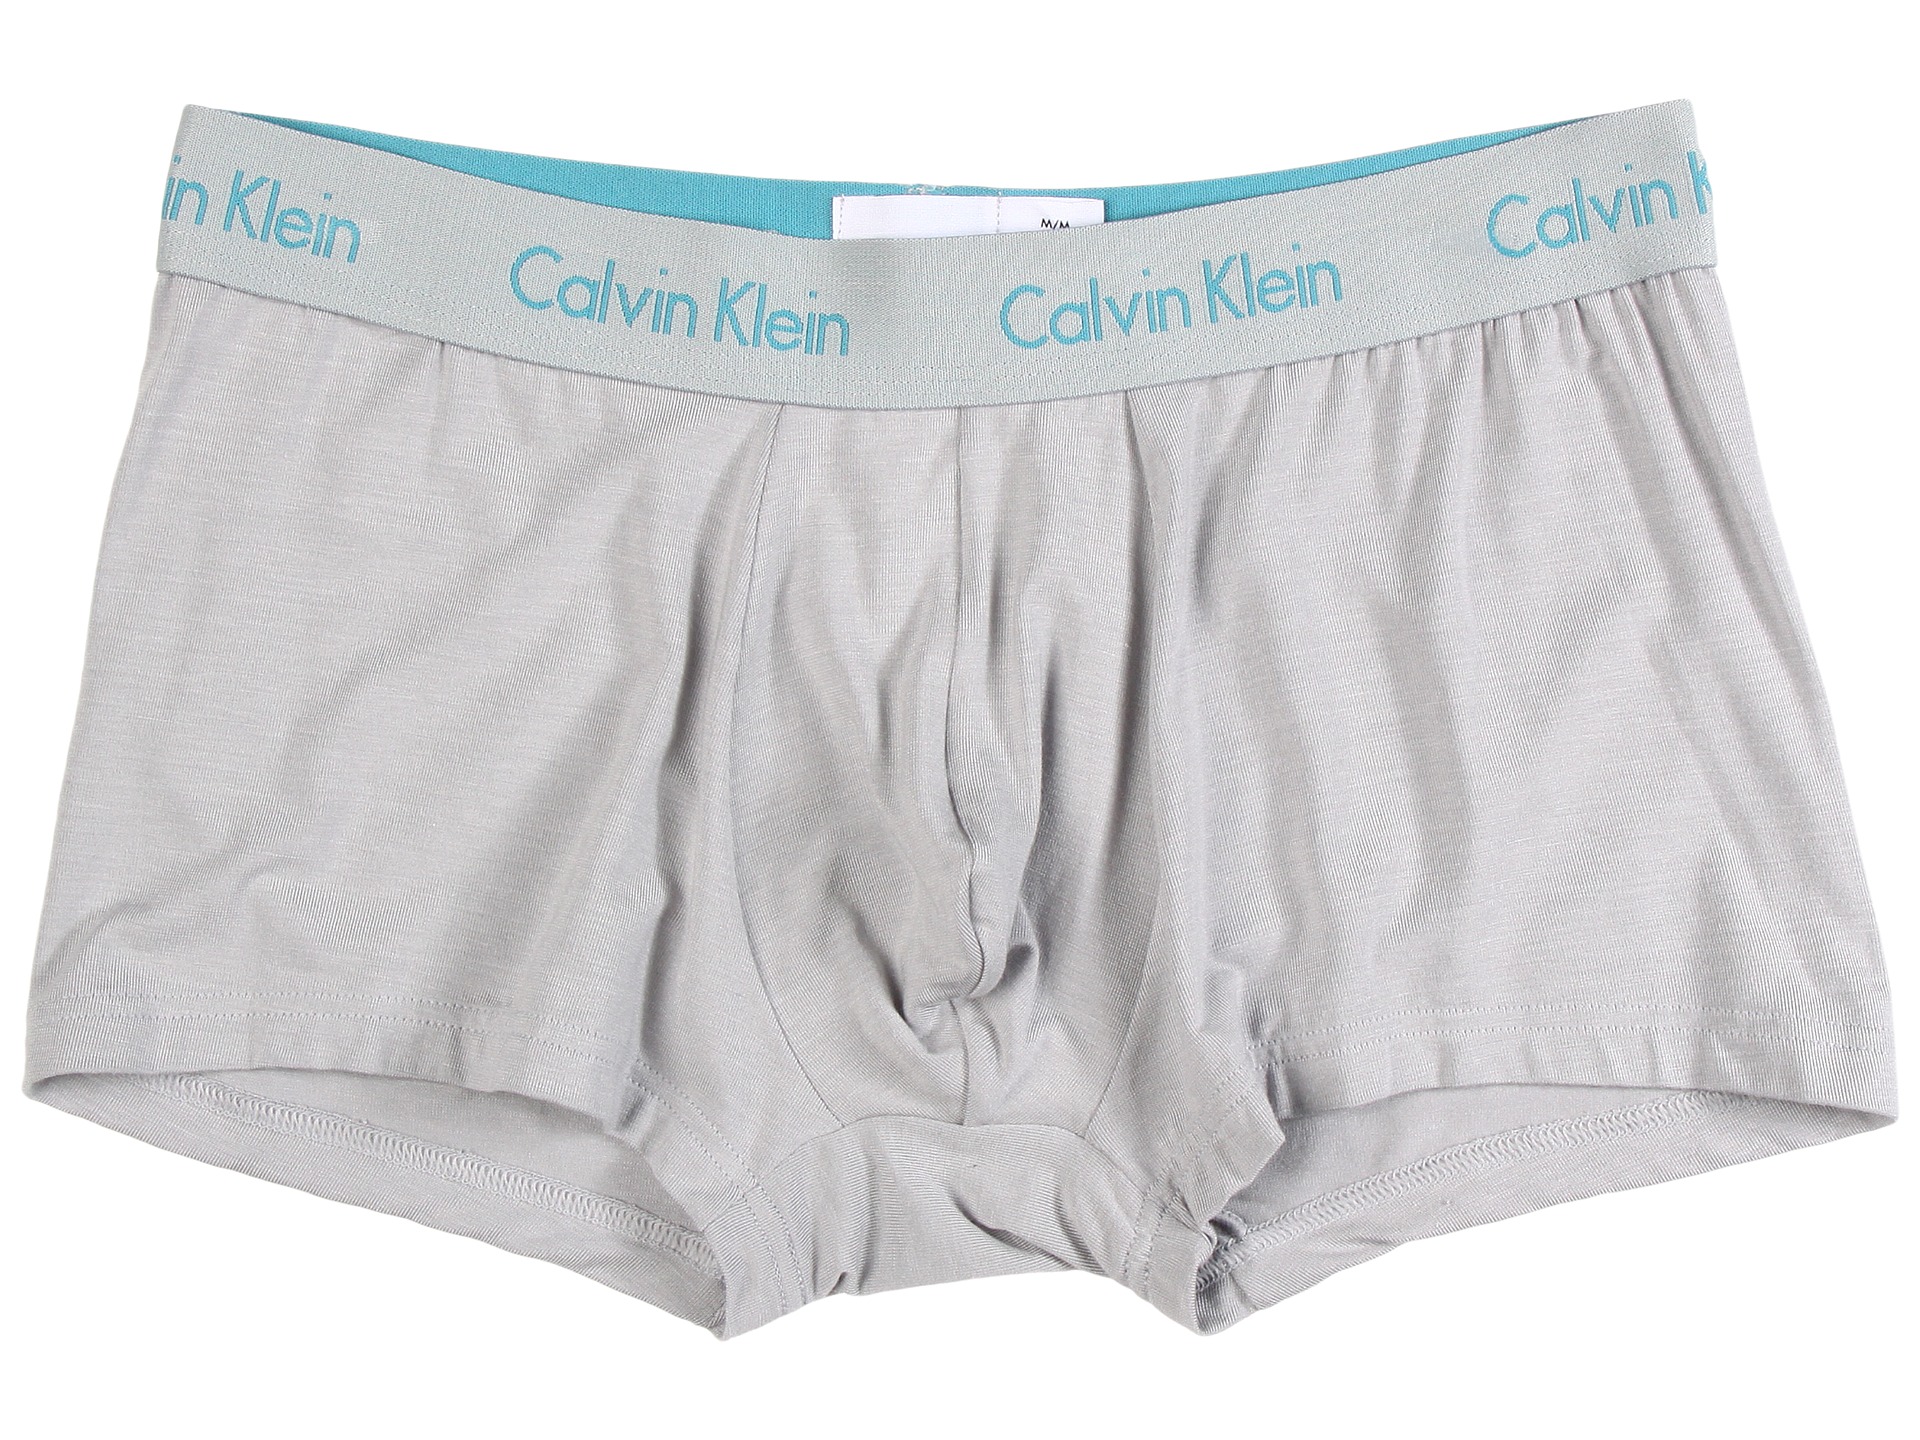 Calvin Klein Underwear Micro Modal Trunk U5554 at 